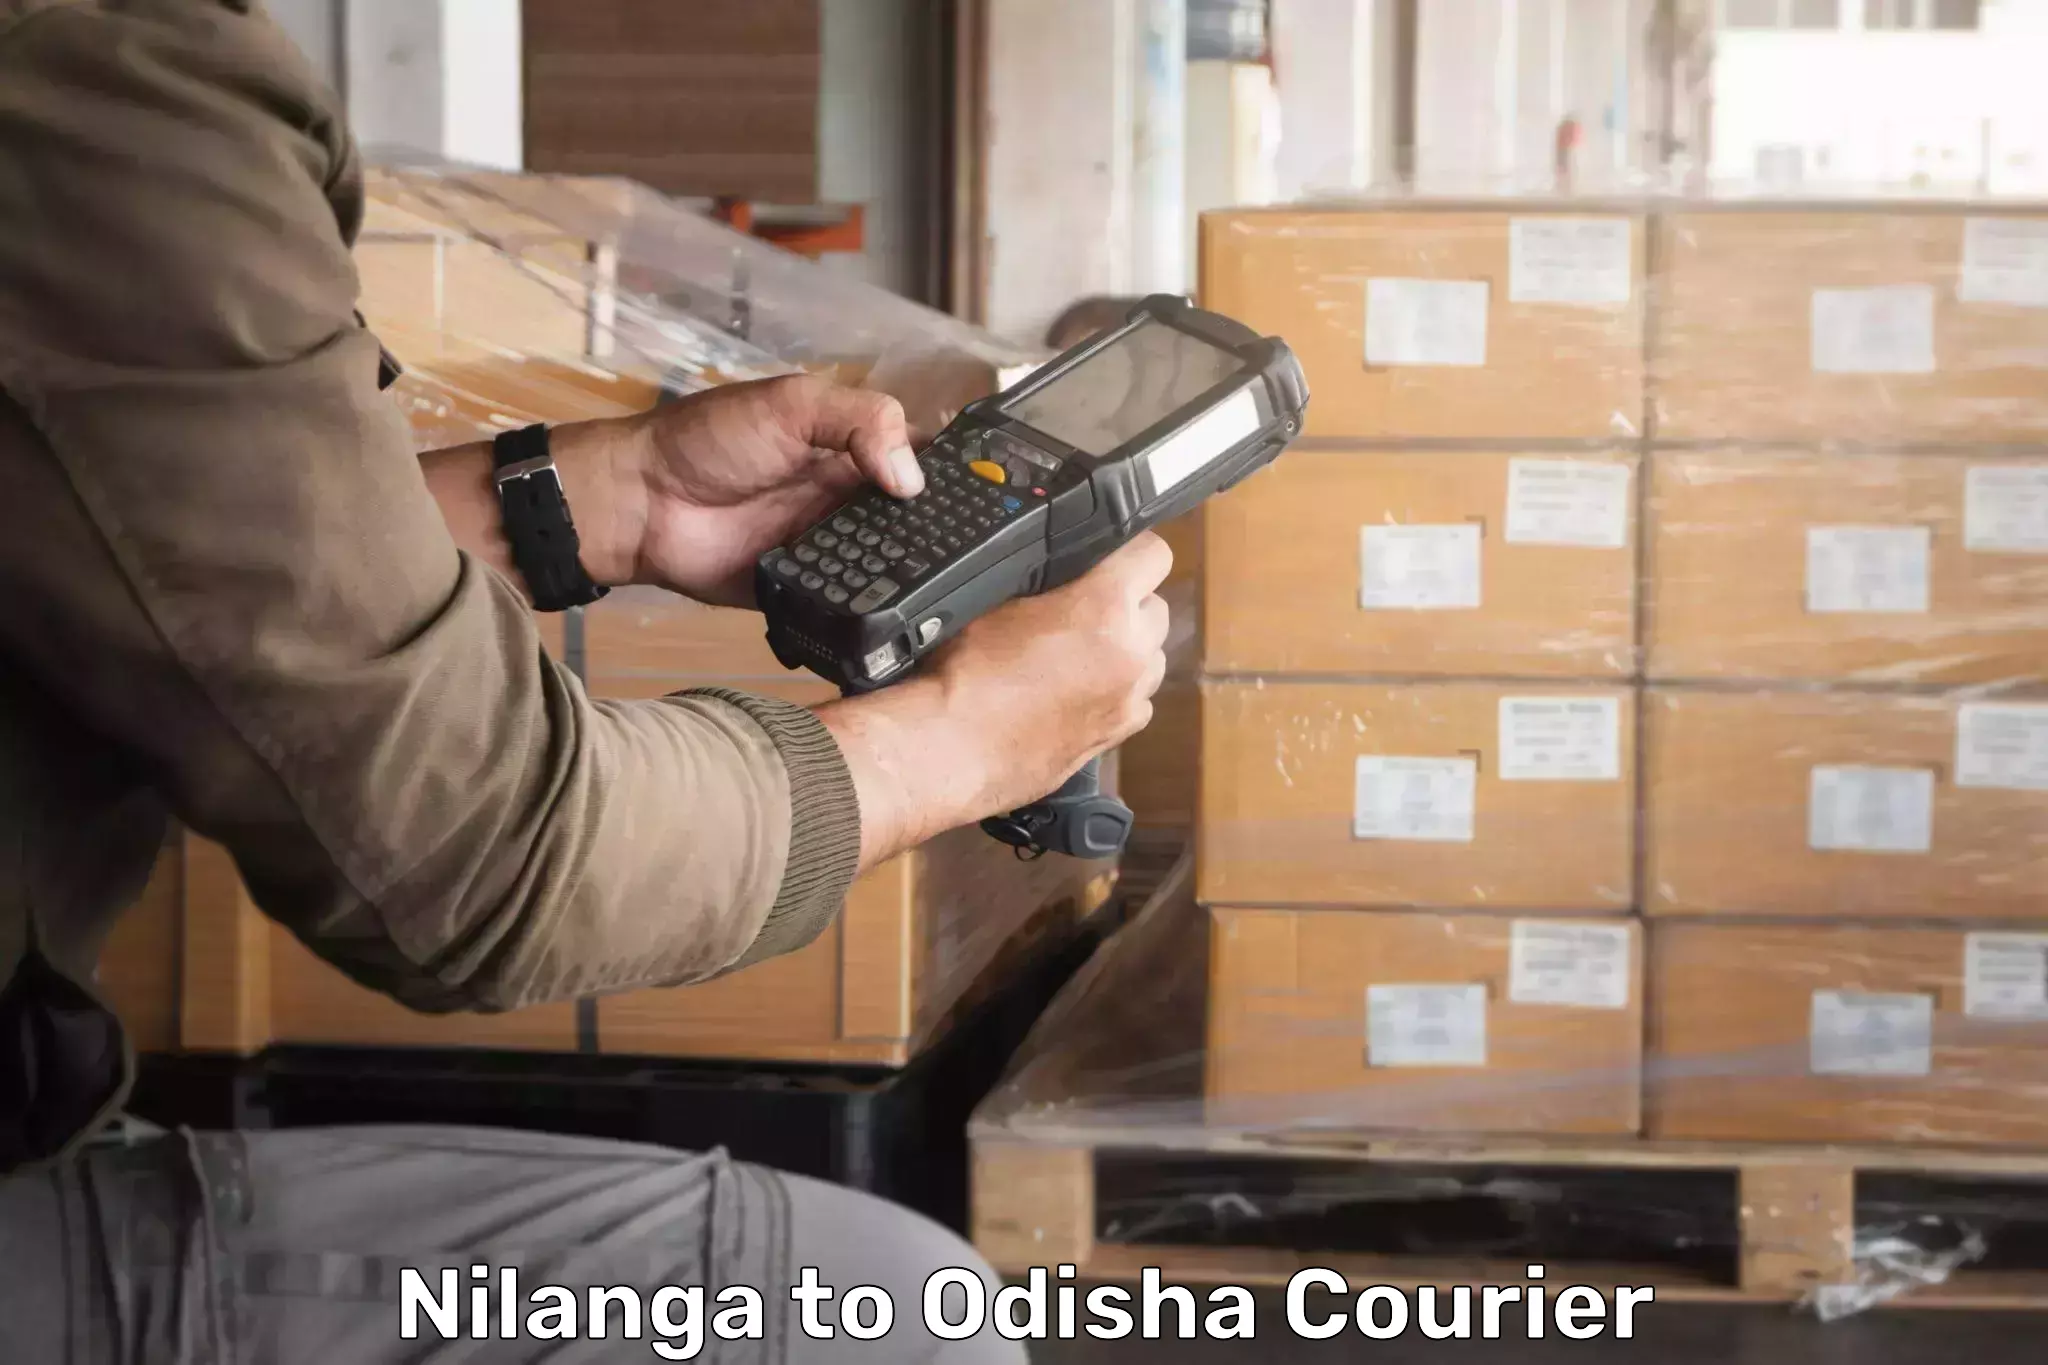 Pharmaceutical courier Nilanga to Turanga